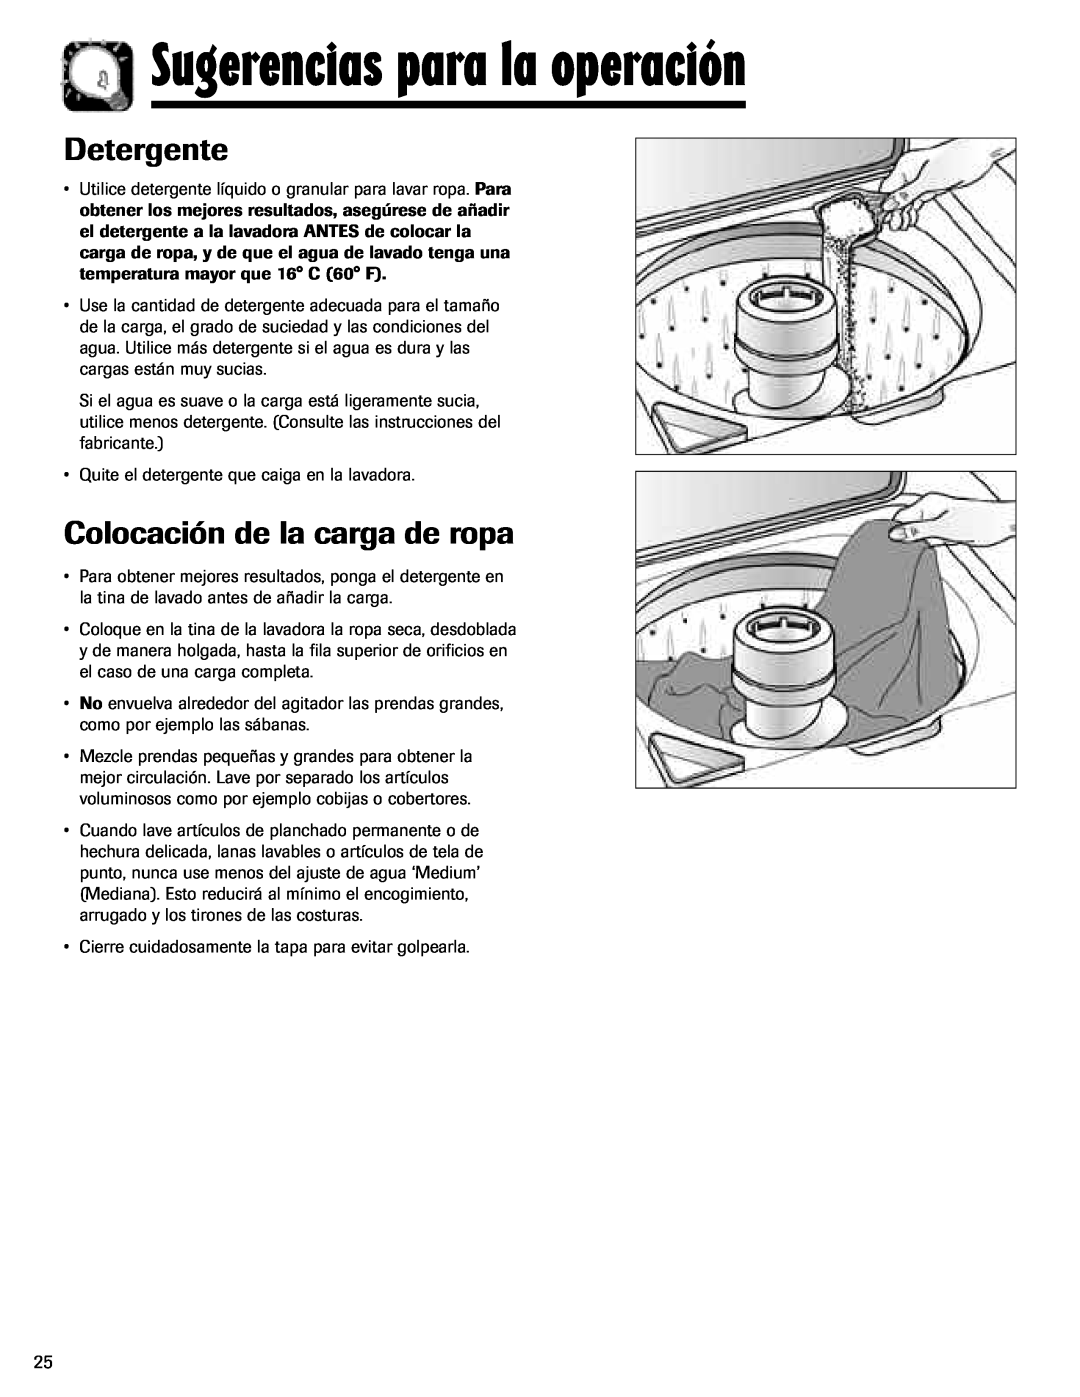 Maytag MAV-3 important safety instructions Sugerencias para la operación, Detergente, Colocación de la carga de ropa 